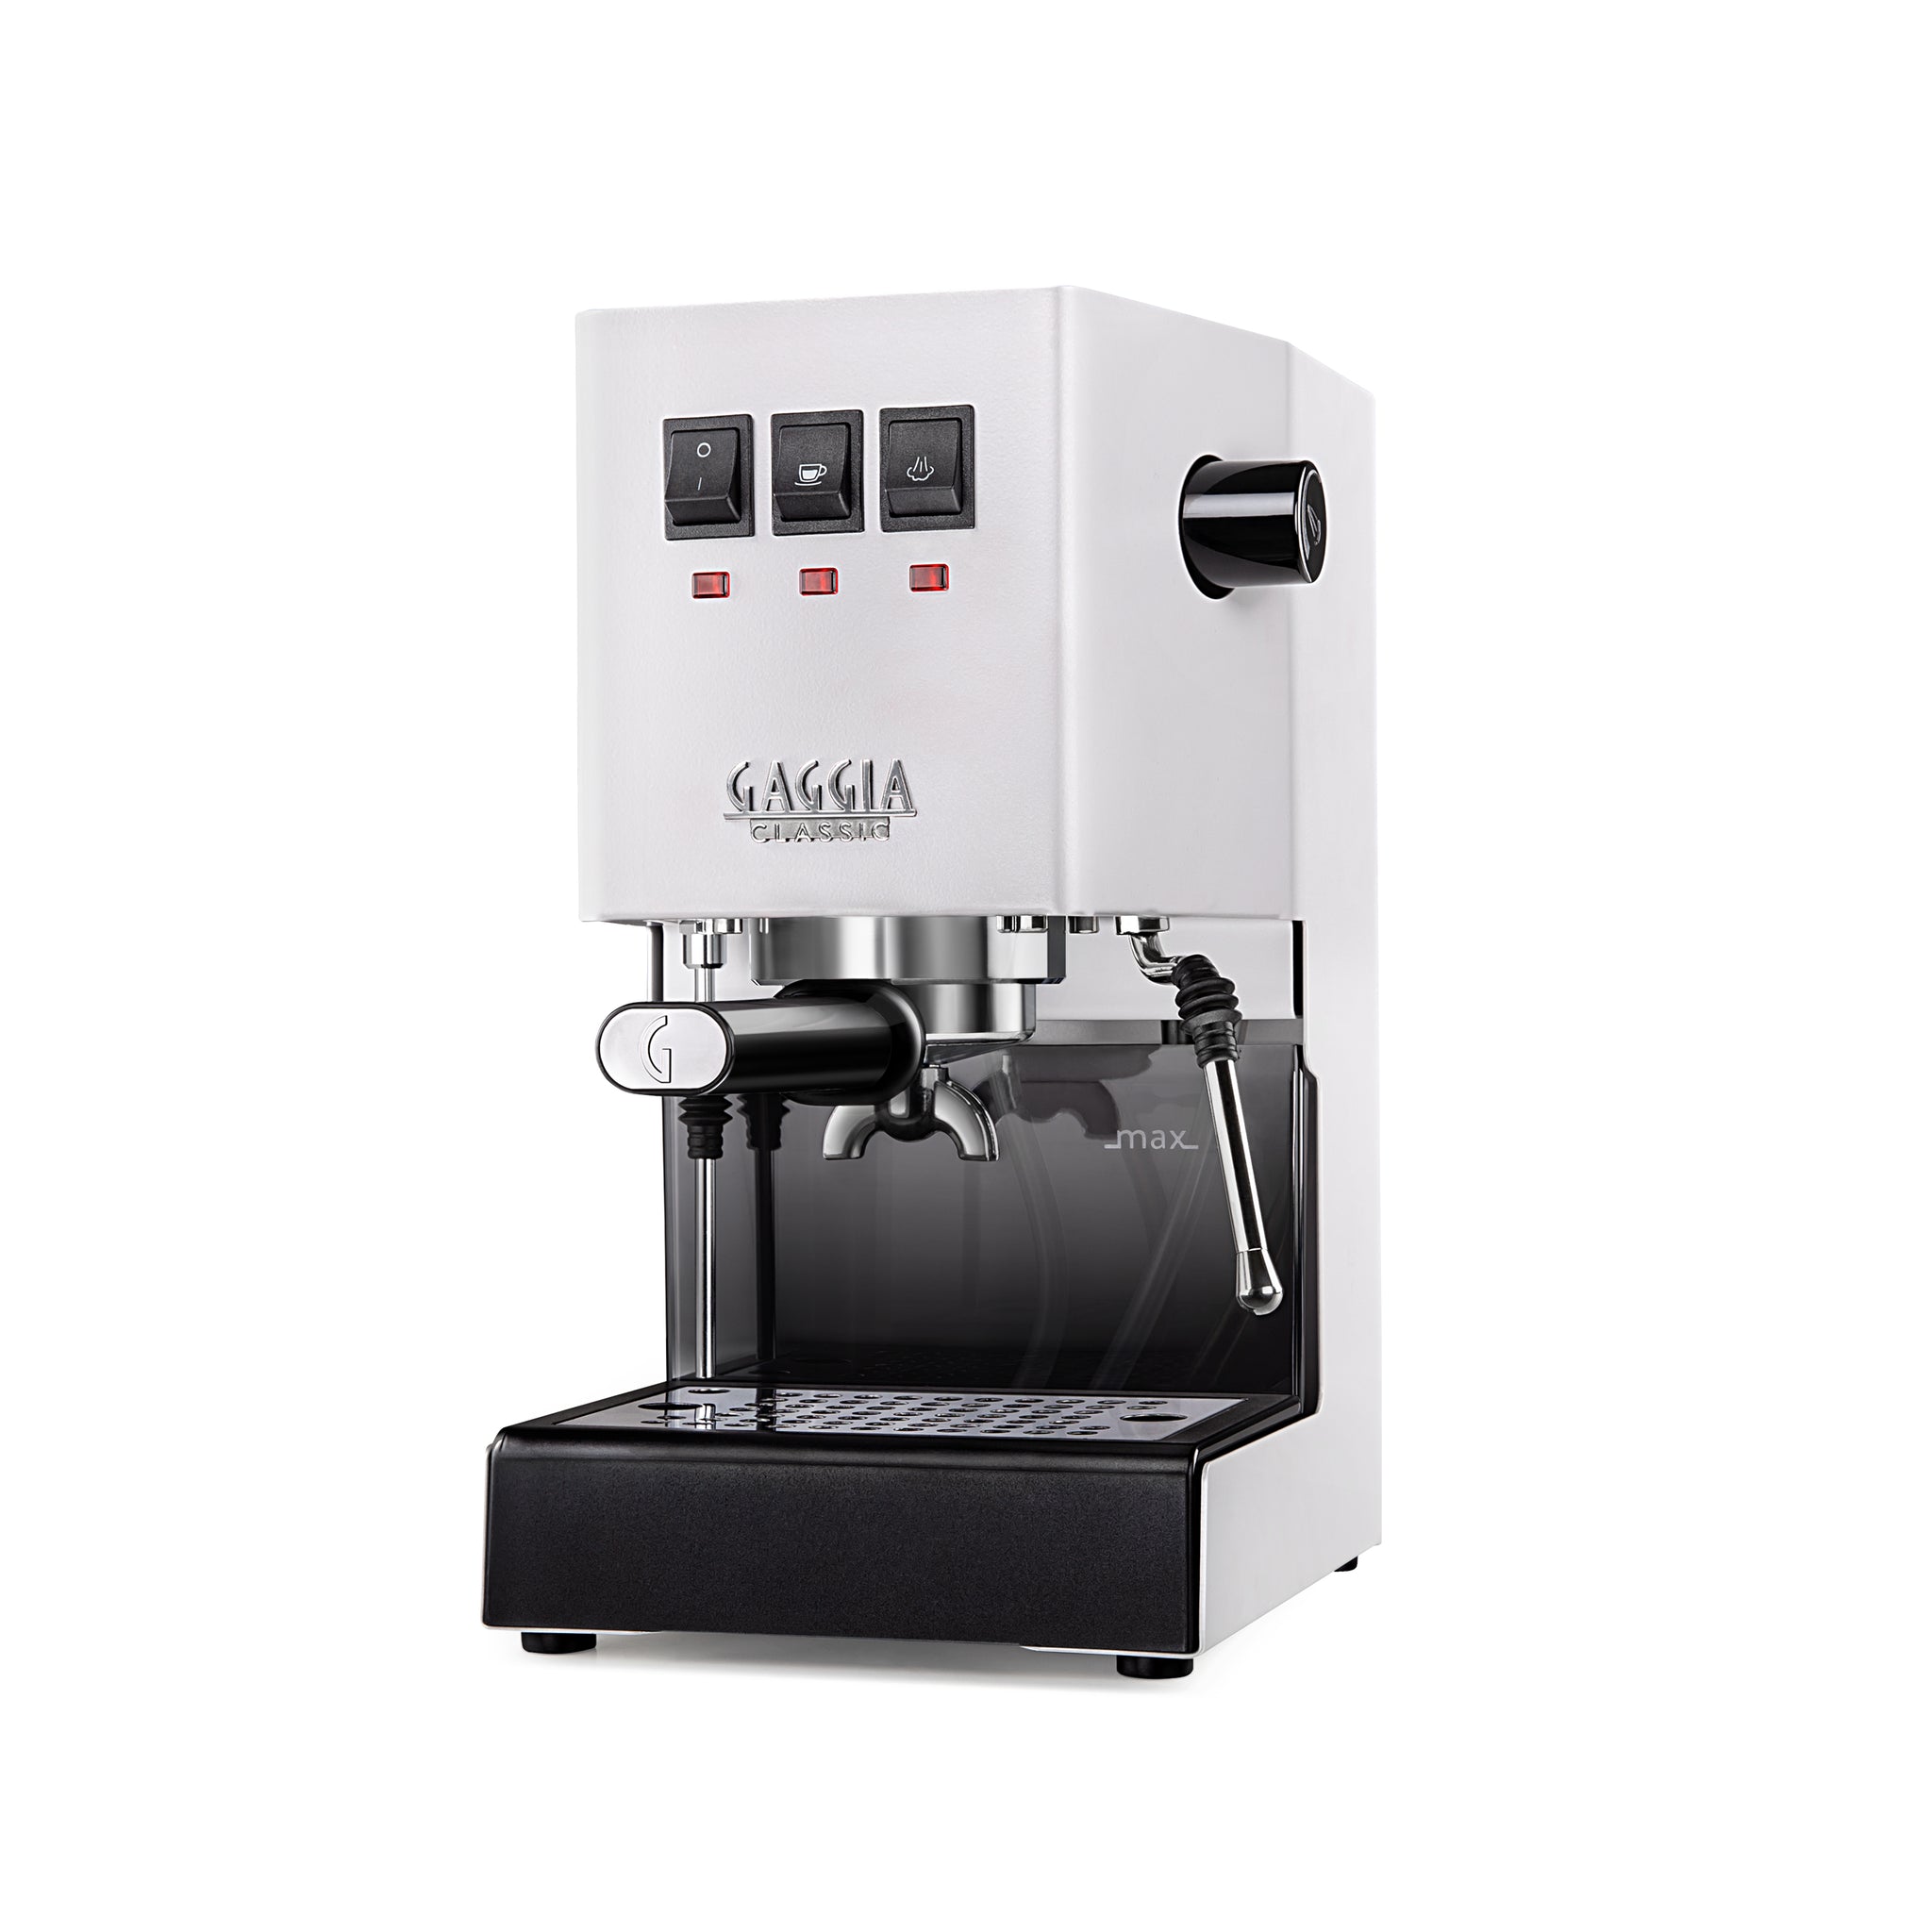 Balanza digital PRO - Coffee Scale Premium – Lima con Cafeina